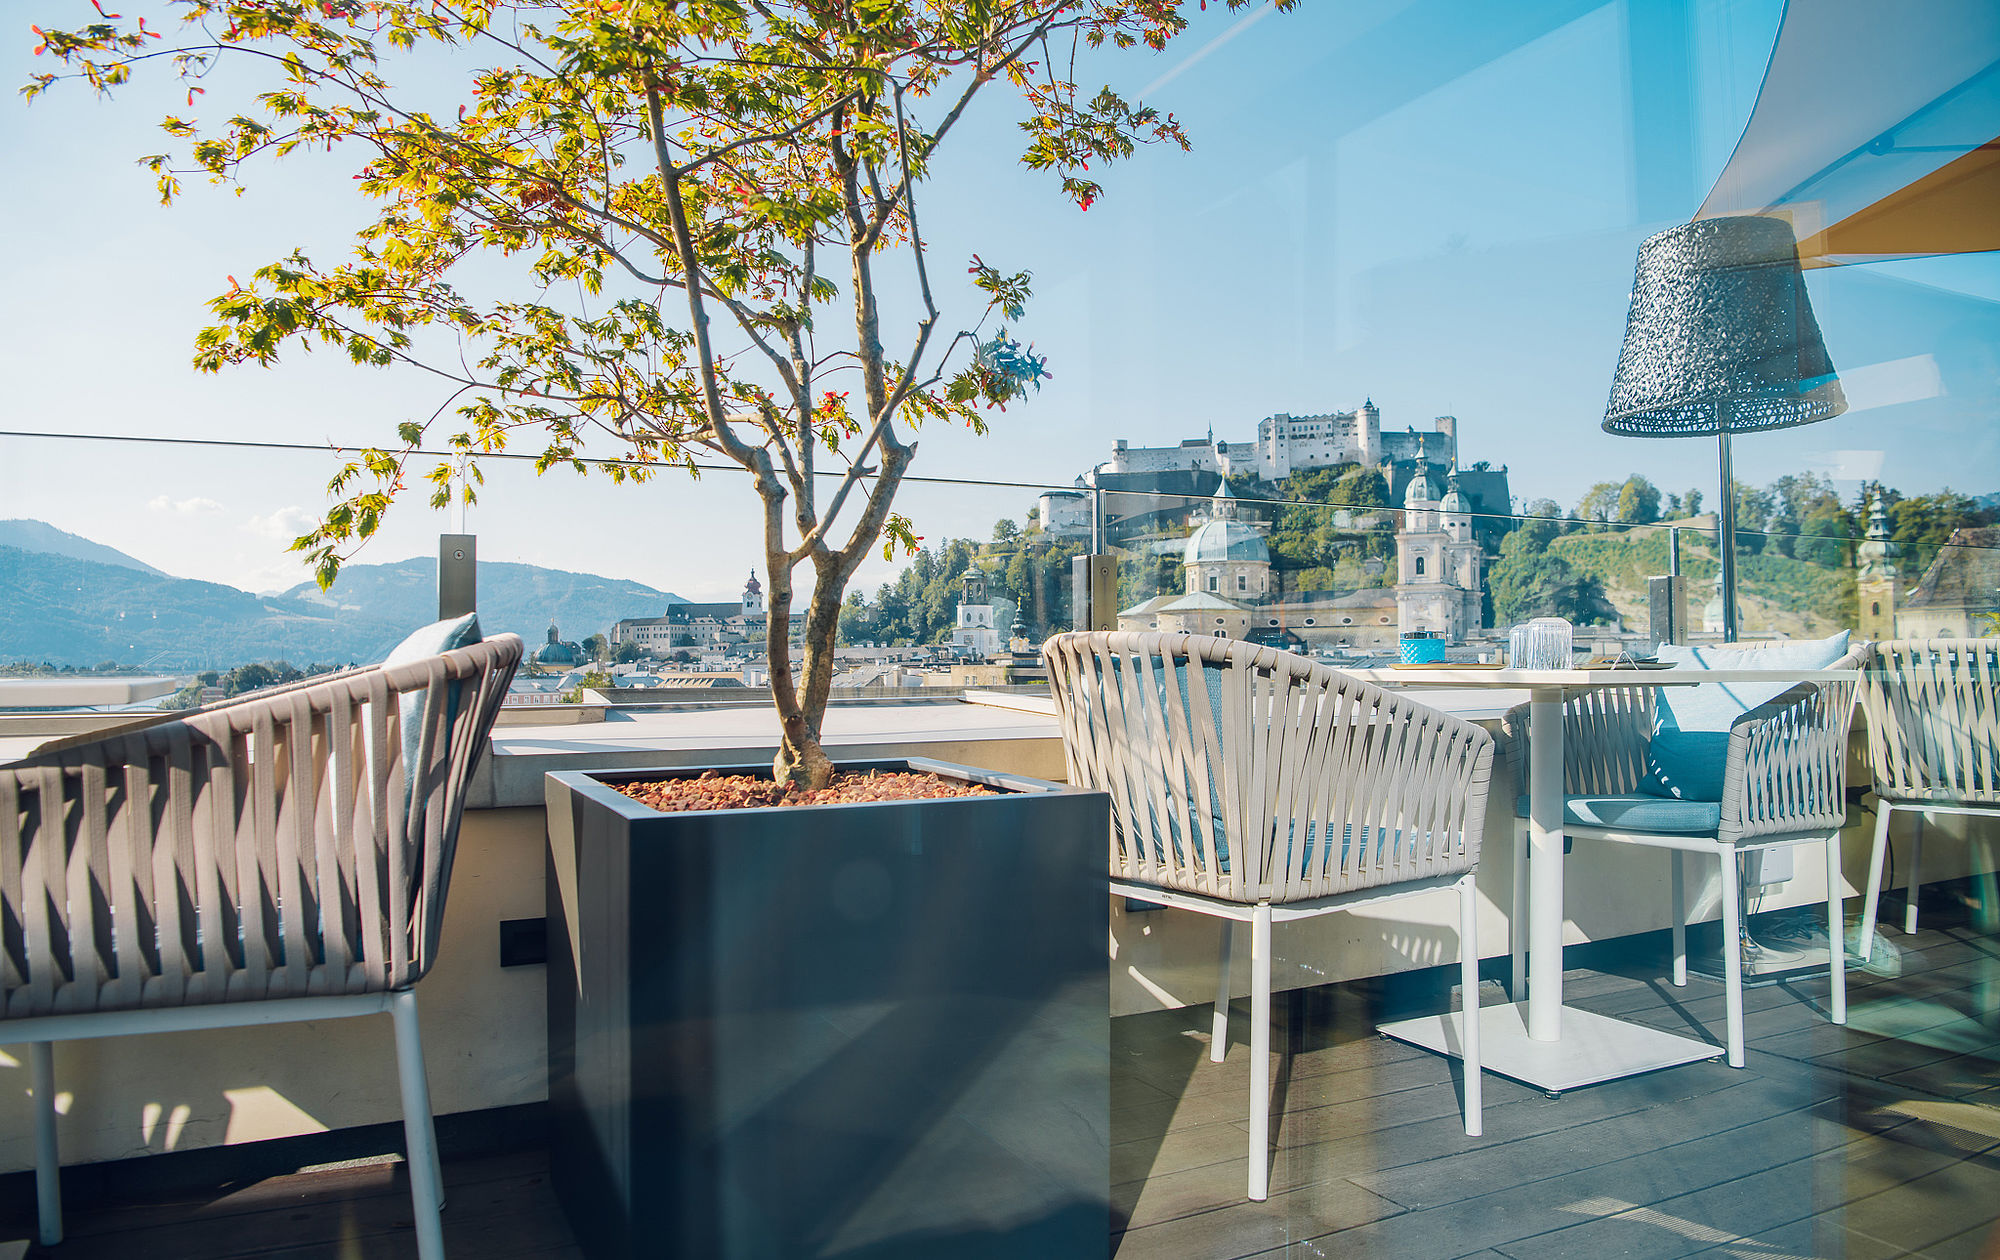 Terrasse des Restaurants mit weißen Stühlen und Tischen und Blick auf Altstadt und Festung